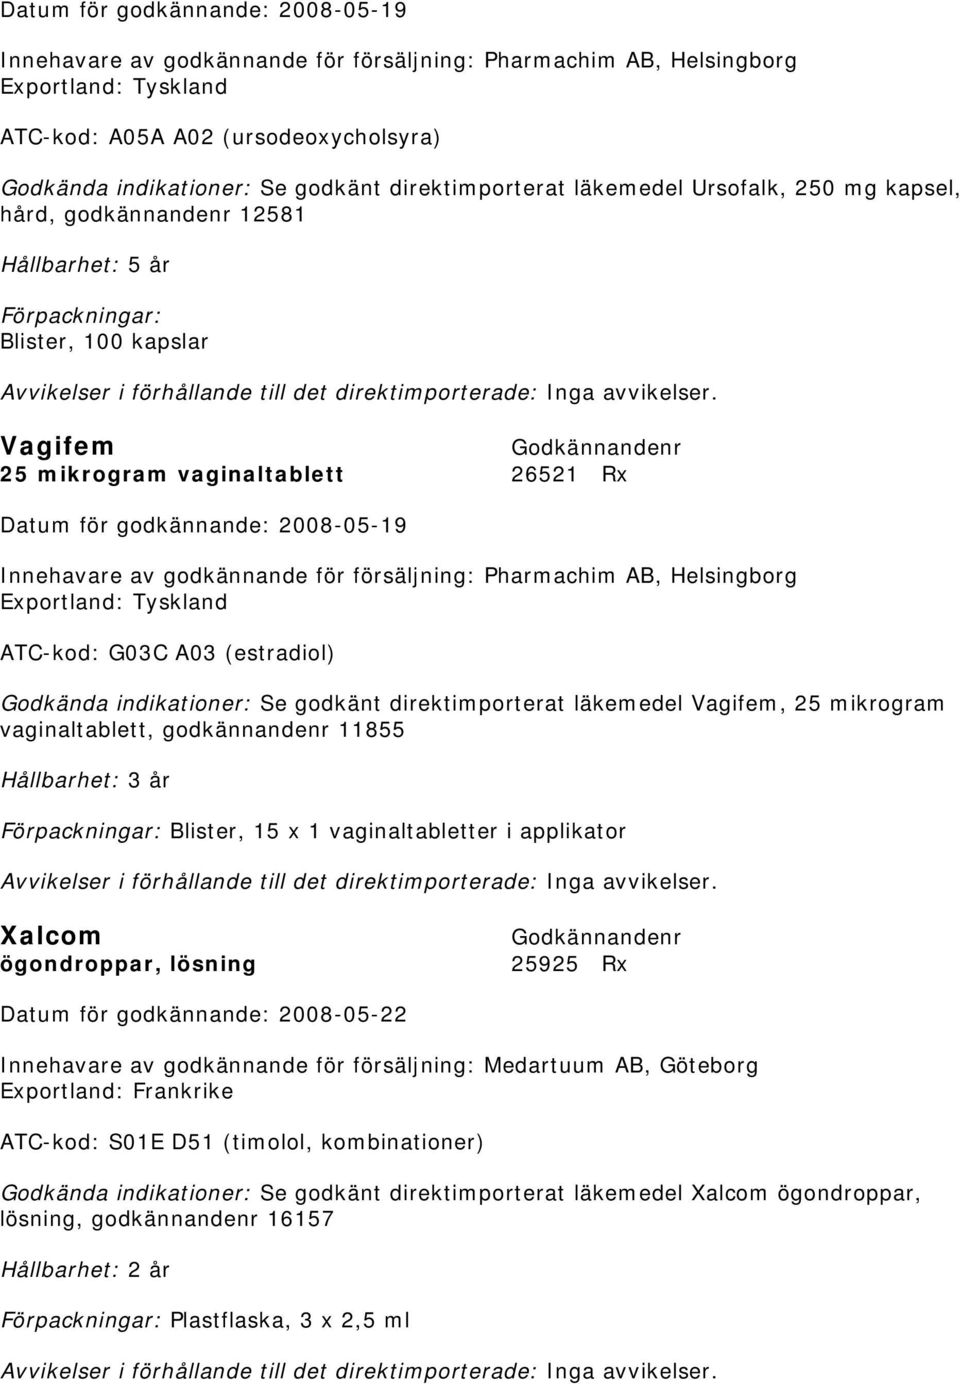 godkännande för försäljning: Pharmachim AB, Helsingborg Exportland: Tyskland ATC-kod: G03C A03 (estradiol) Se godkänt direktimporterat läkemedel Vagifem, 25 mikrogram vaginaltablett, godkännandenr